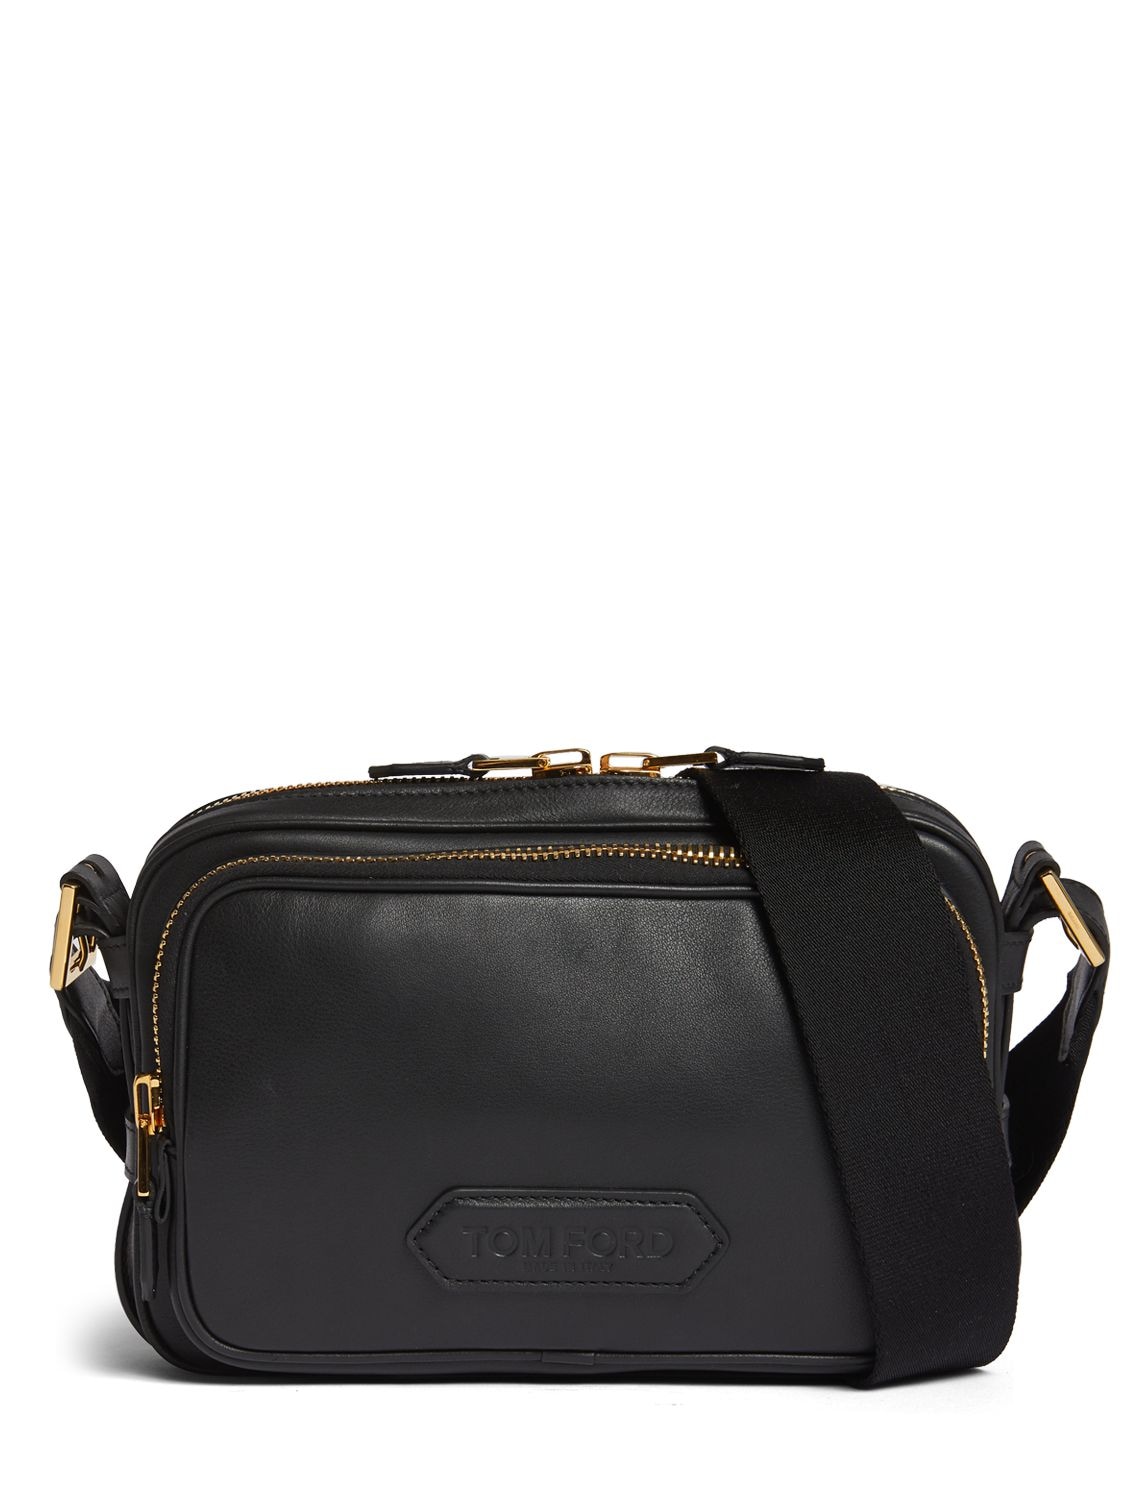 Shop Tom Ford Medium Soft Leather Messenger Bag In Black